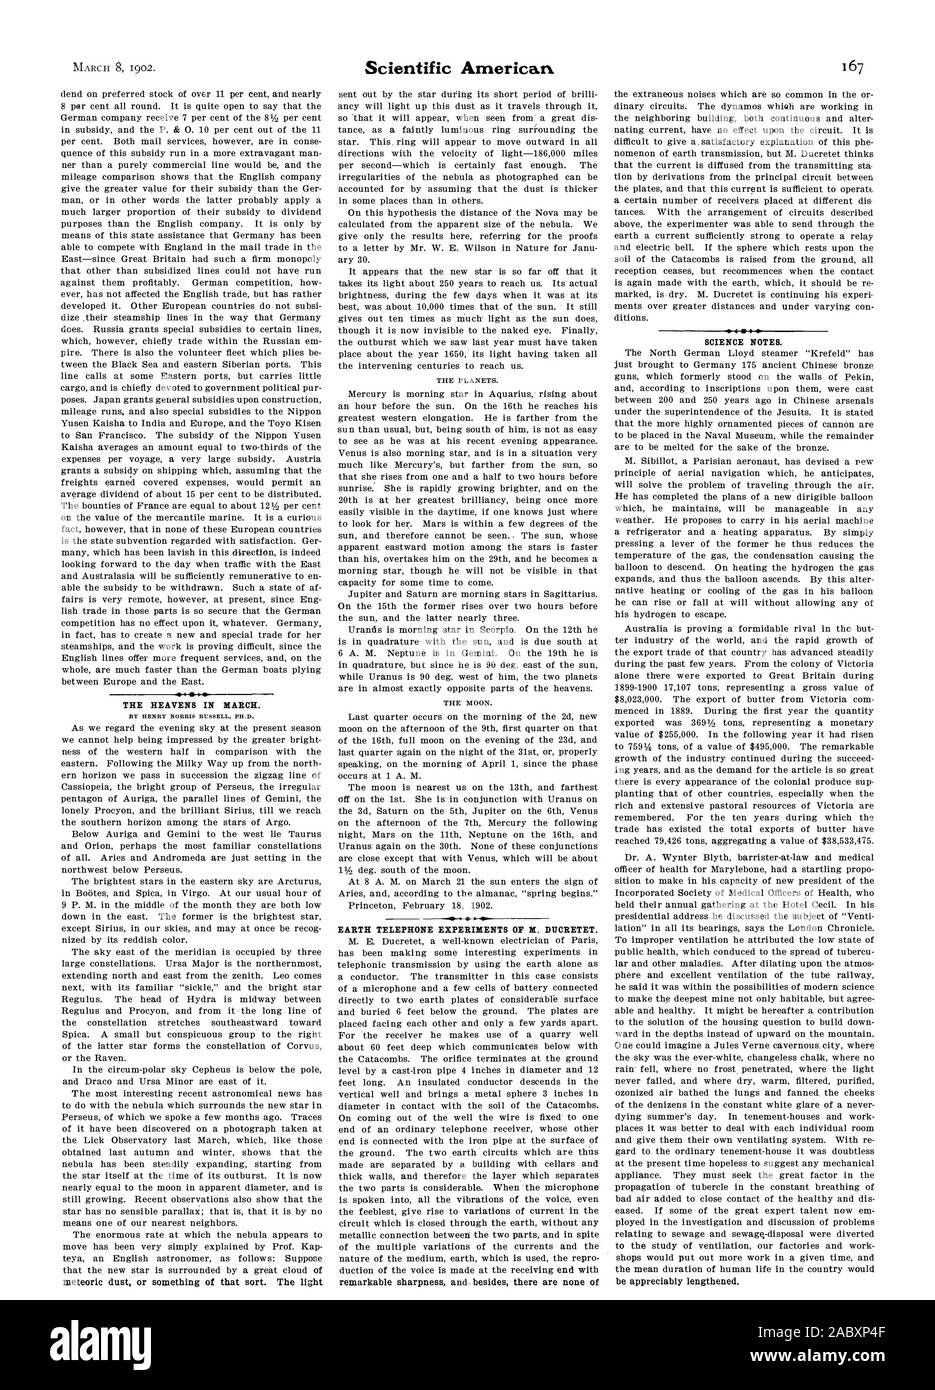 Il cielo nel mese di marzo. Da HENRY NORRIS RUSSELL PH.D. Terra di esperimenti di telefono di X. DIICRETET. La scienza note., Scientific American, 1902-03-08 Foto Stock